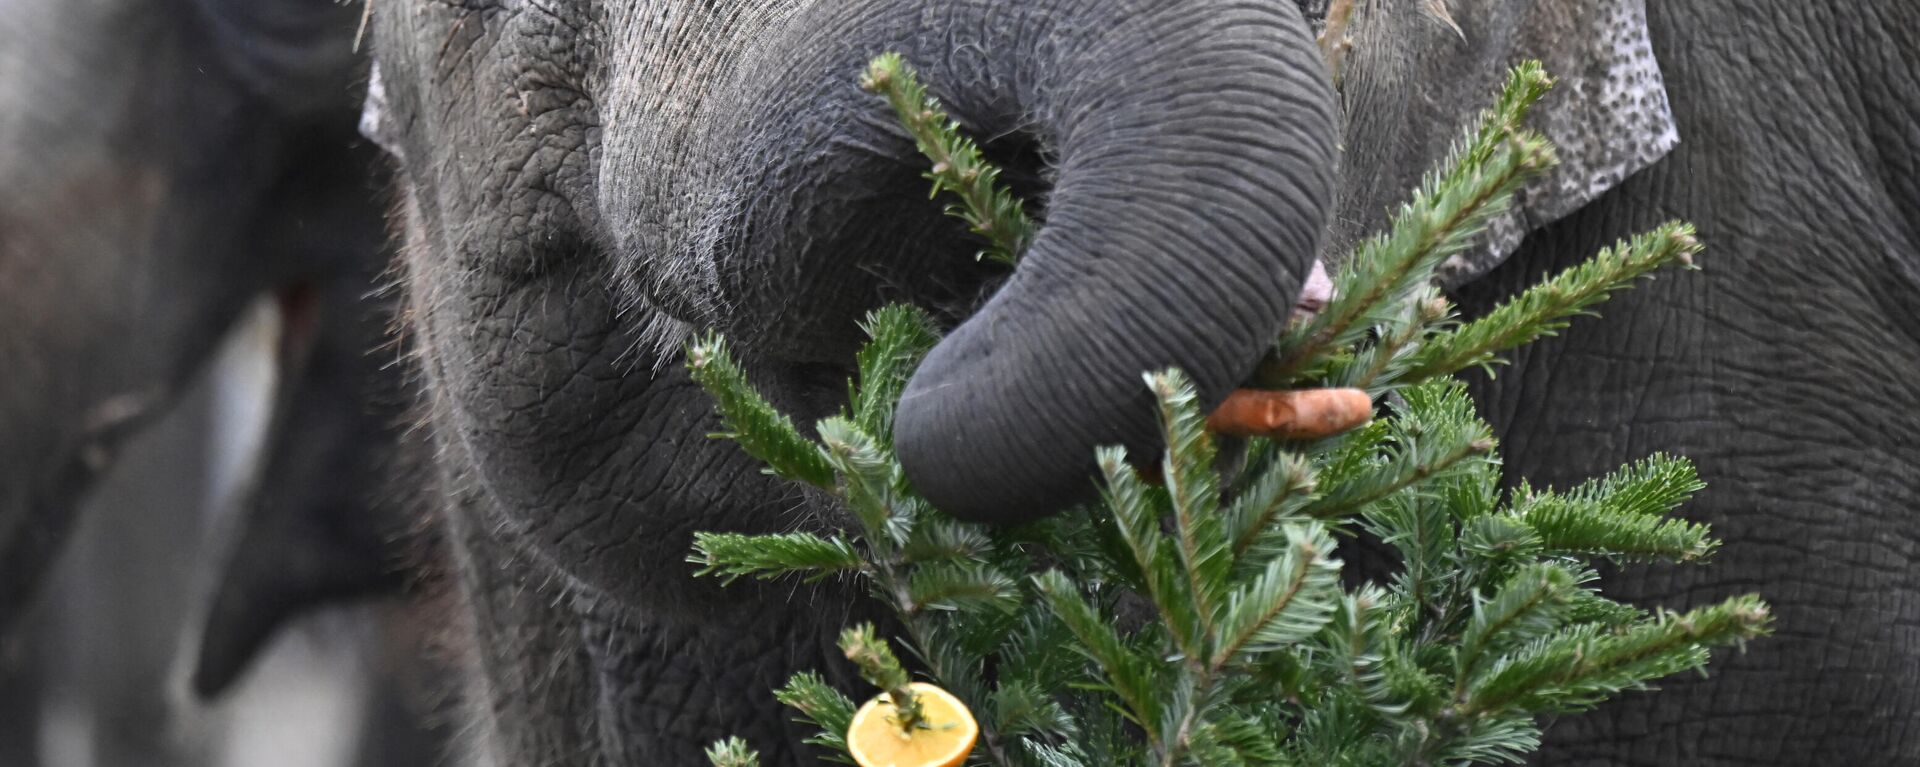 Un elefante en el zoológico de Berlín come un árbol de Navidad - Sputnik Mundo, 1920, 29.12.2021